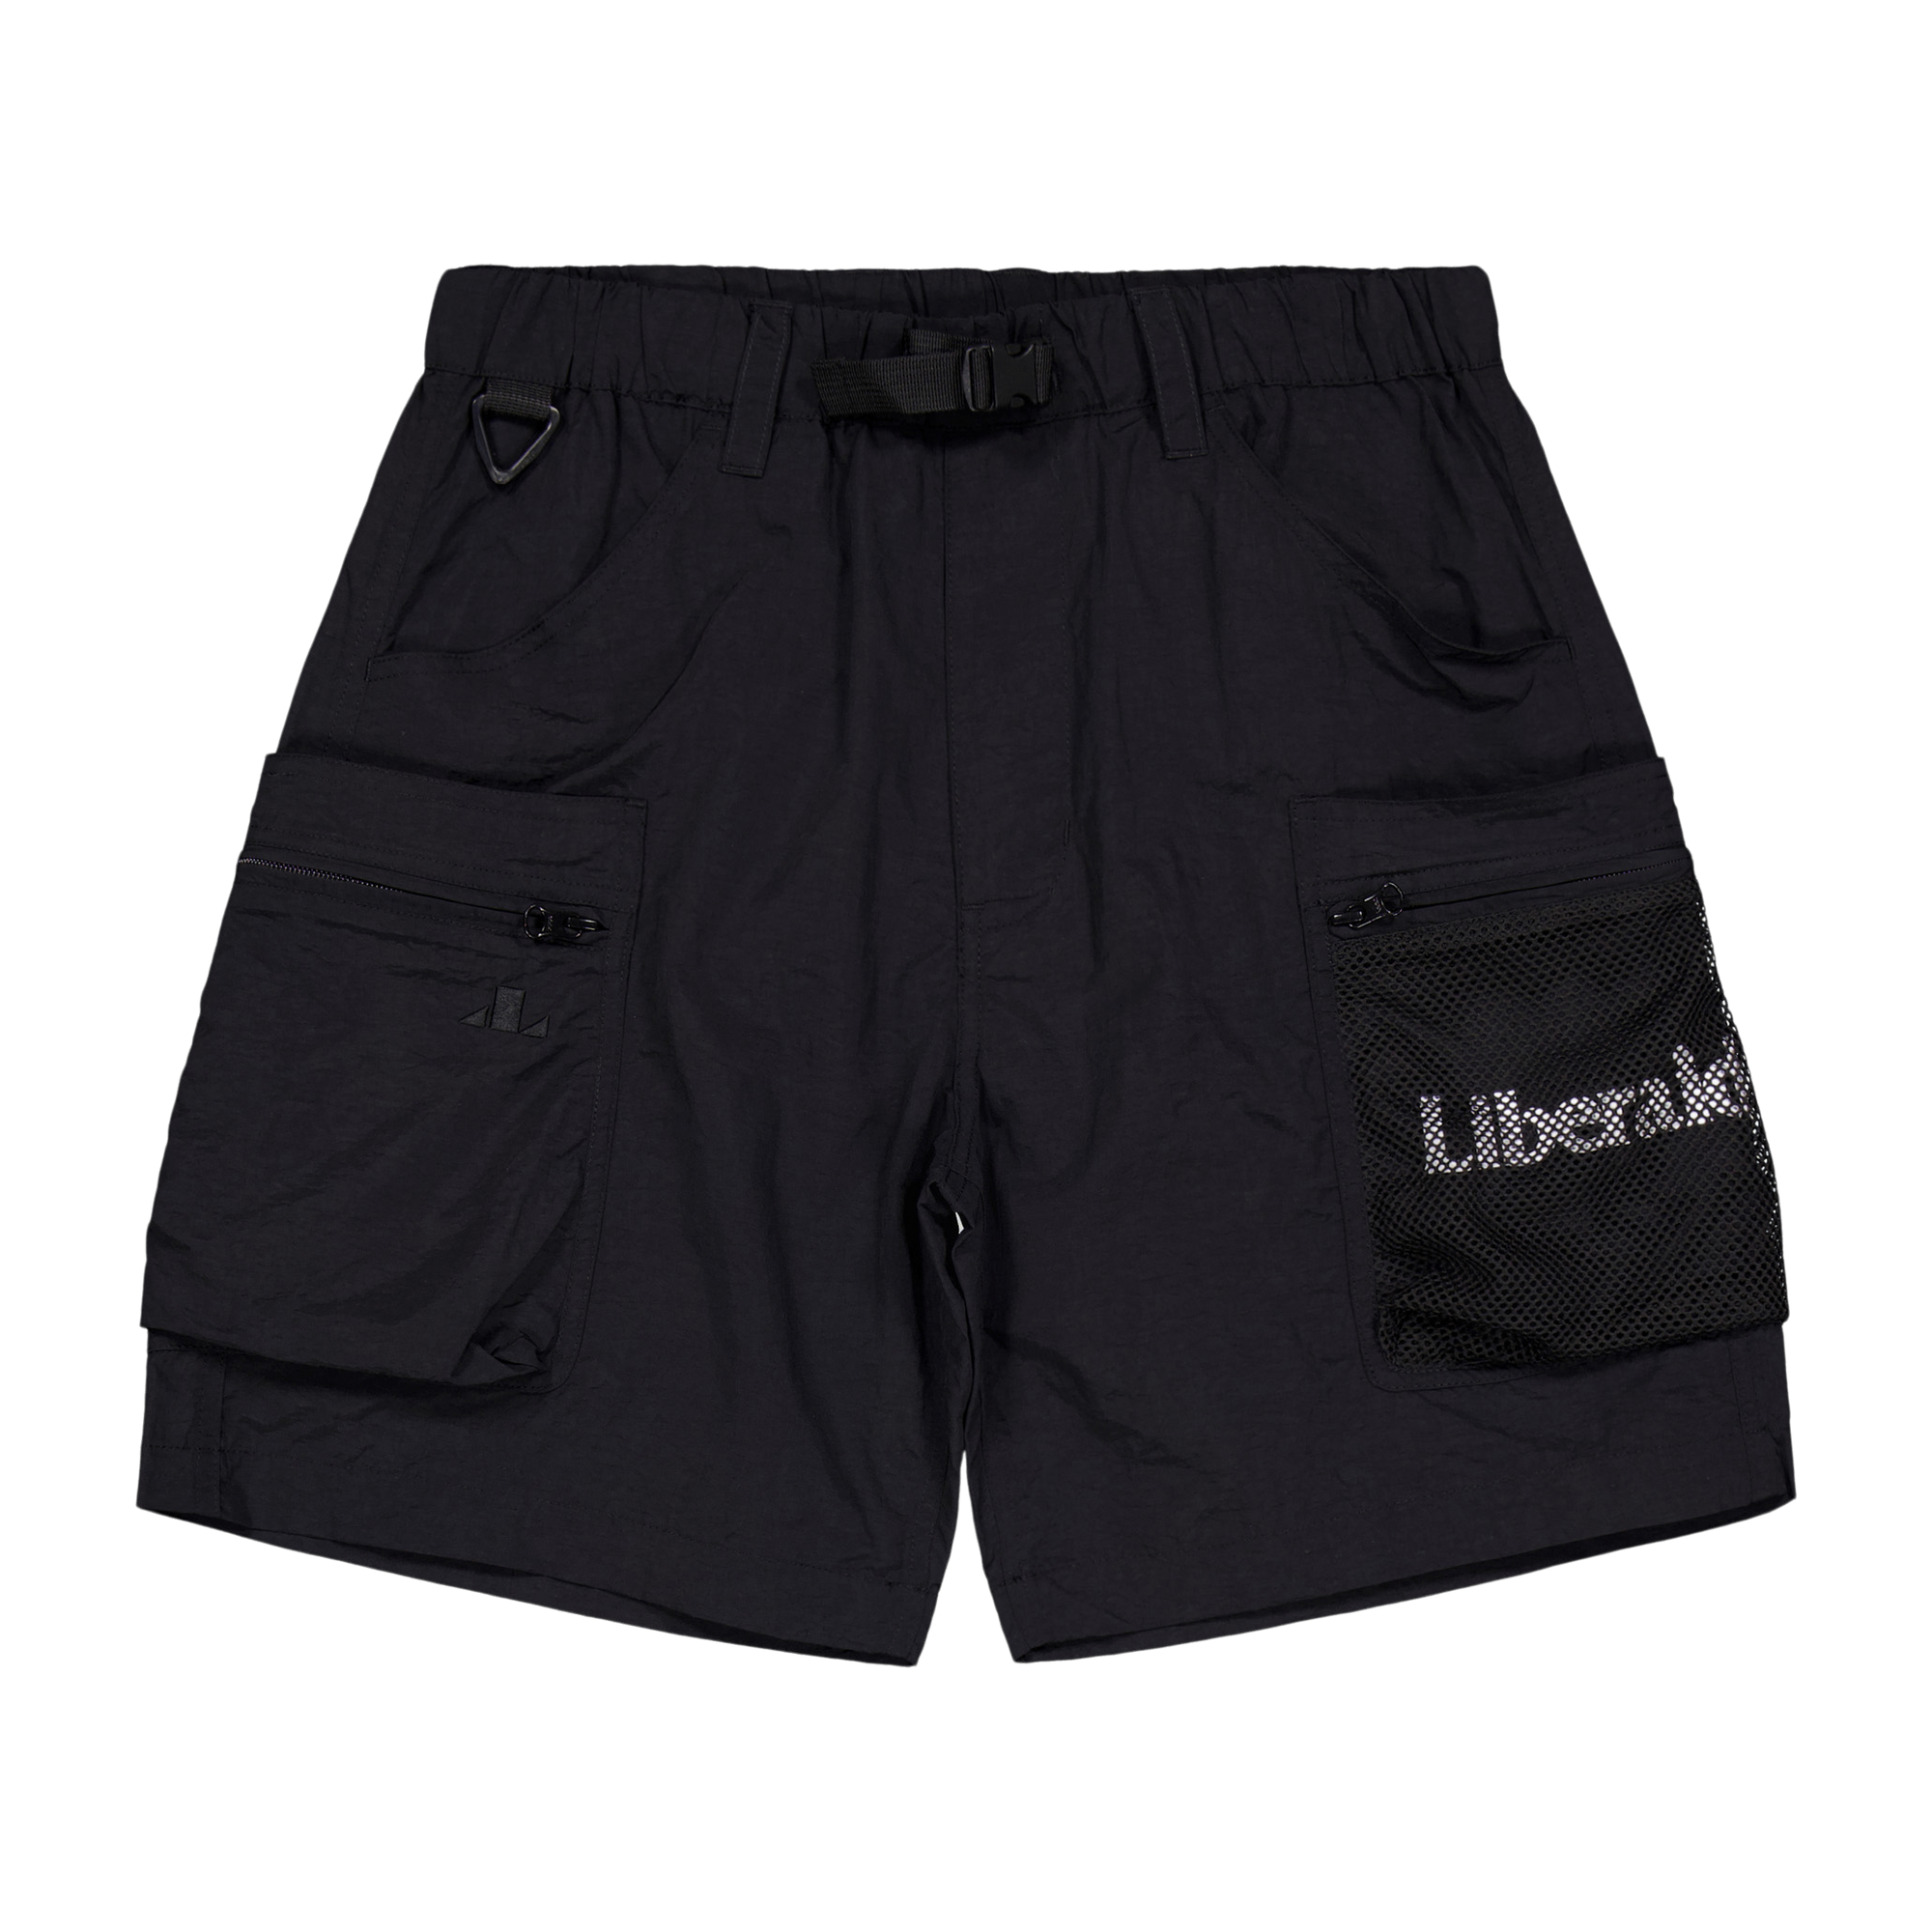 Liberaiders Lr Nylon Shorts Ii B | Caliroots.com